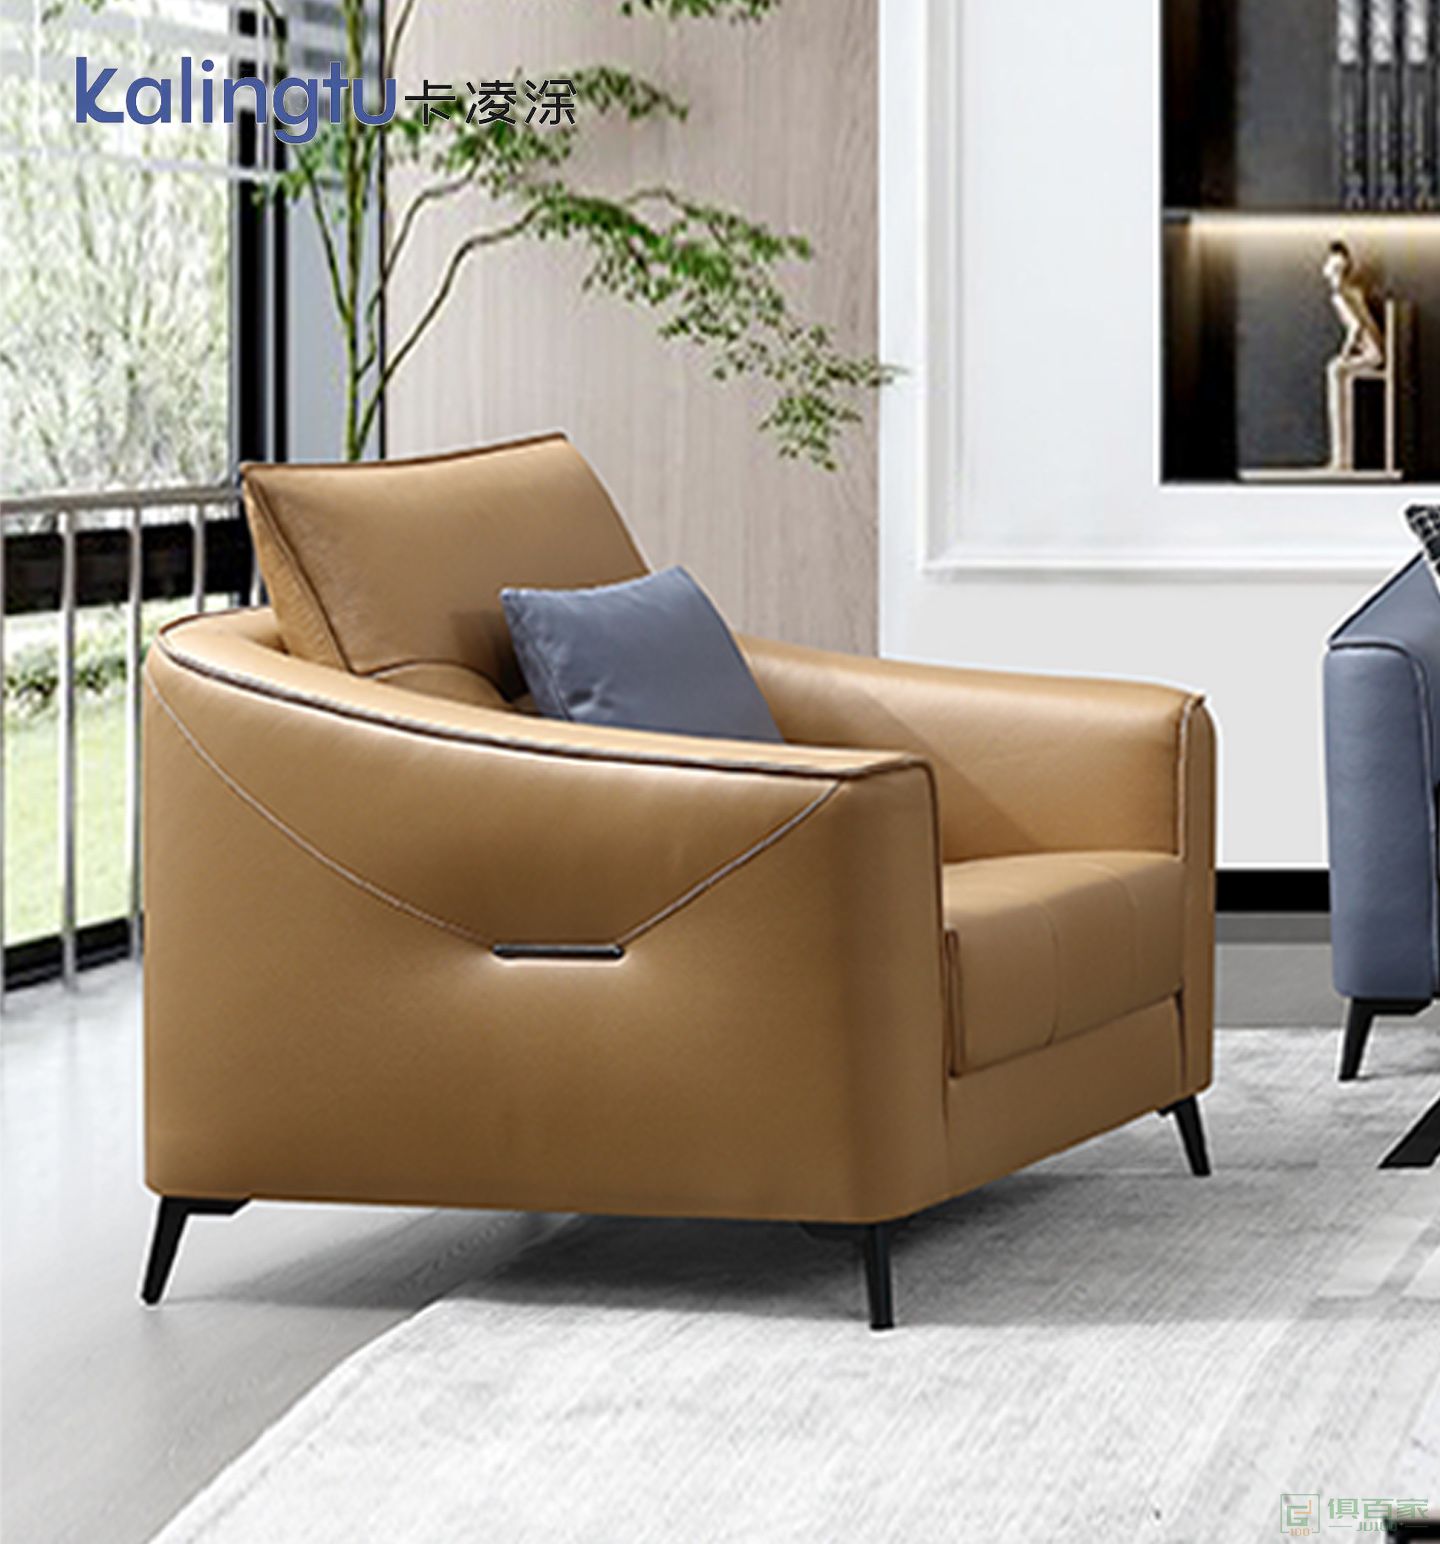 卡凌涂家具民用沙发系列意式极简轻奢科技布沙发脚踏组合